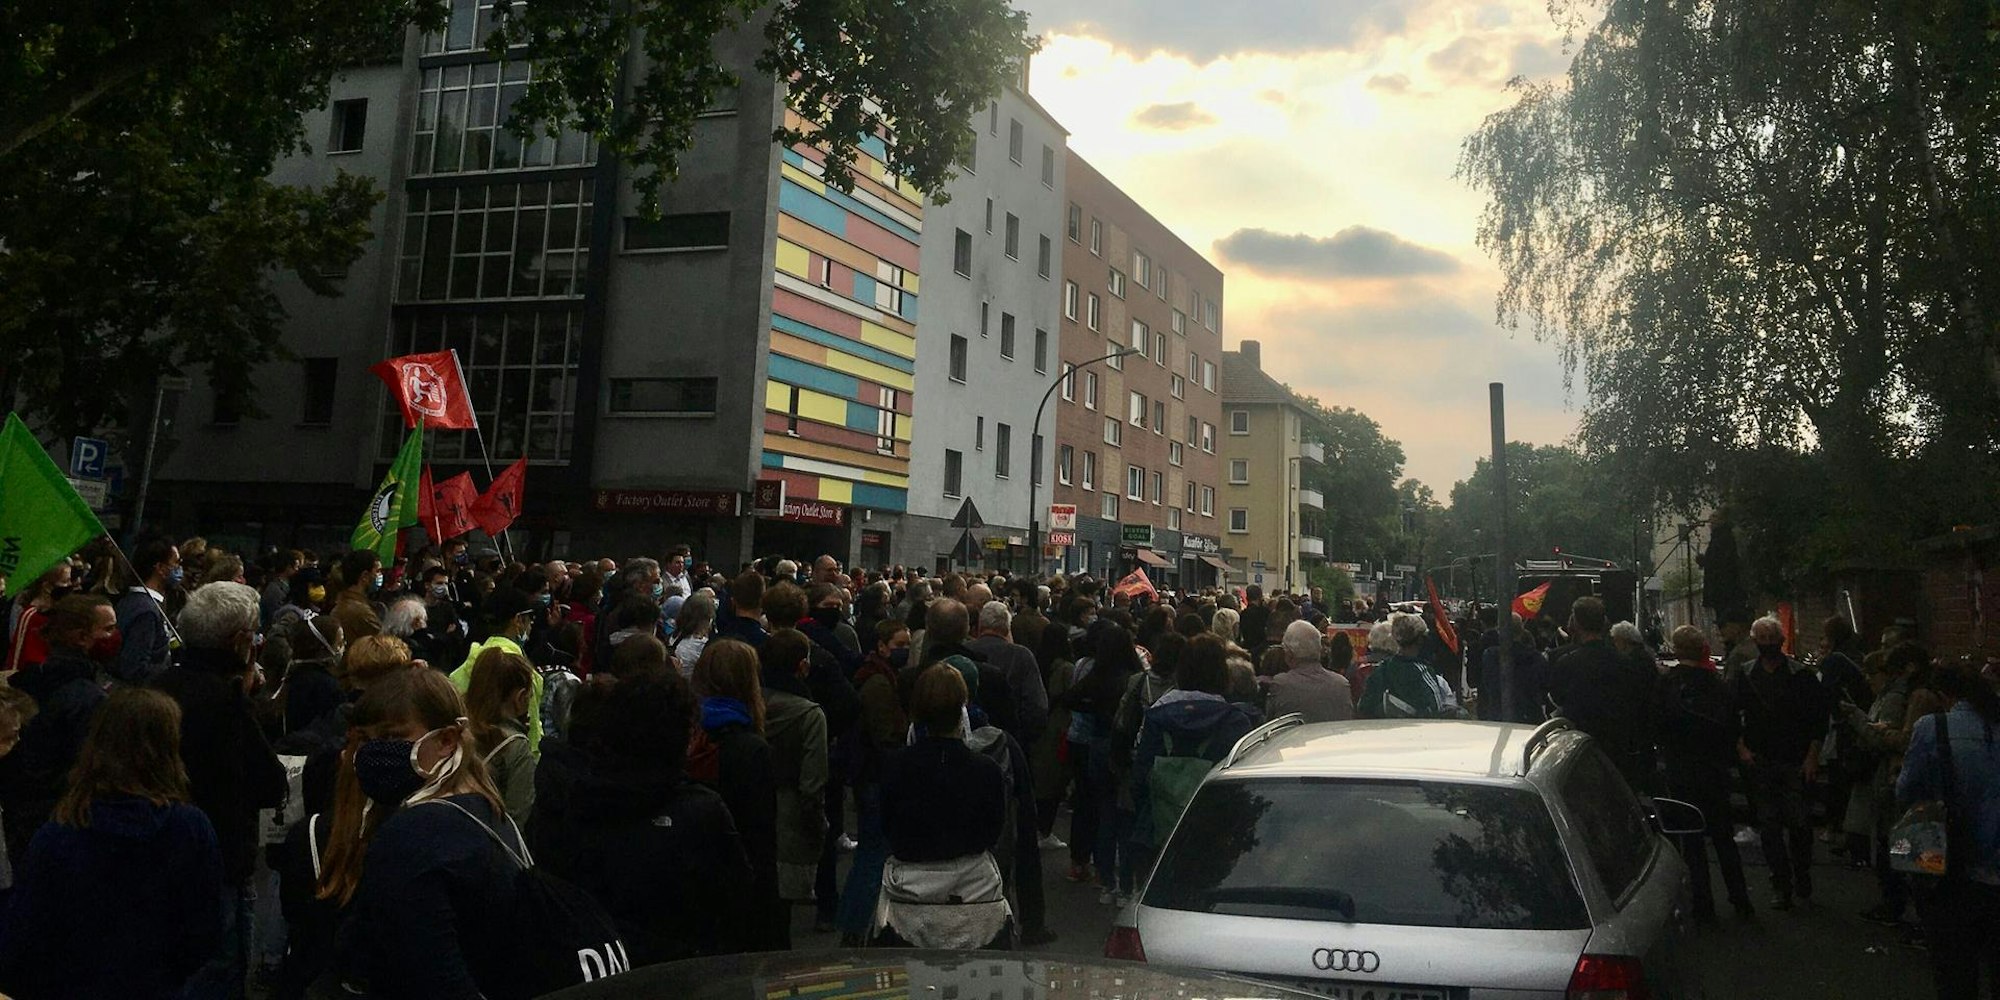 Demo Keupstraße